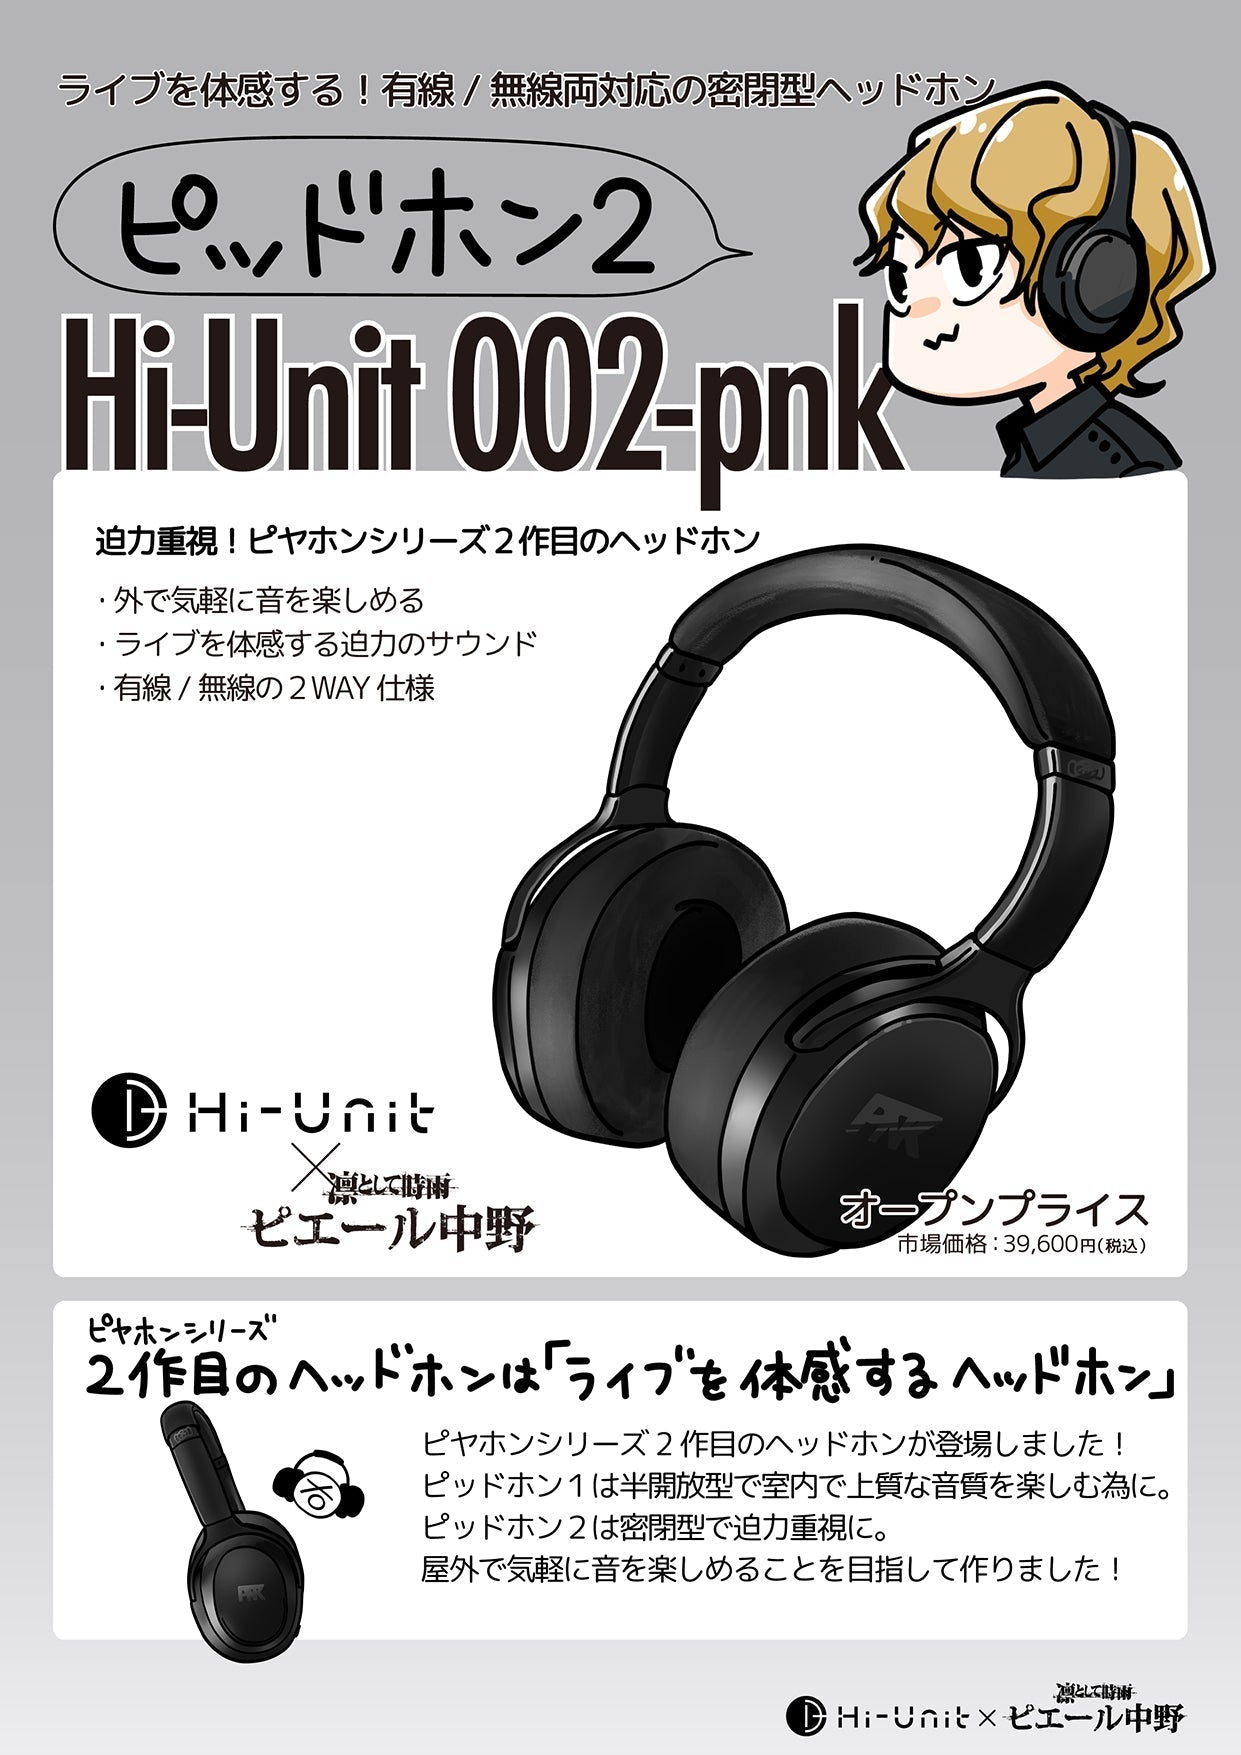 ■【グループ特別価格】Hi-Unit 002-pnk ピッドホン2 と mimimamoのセット【送料無料】